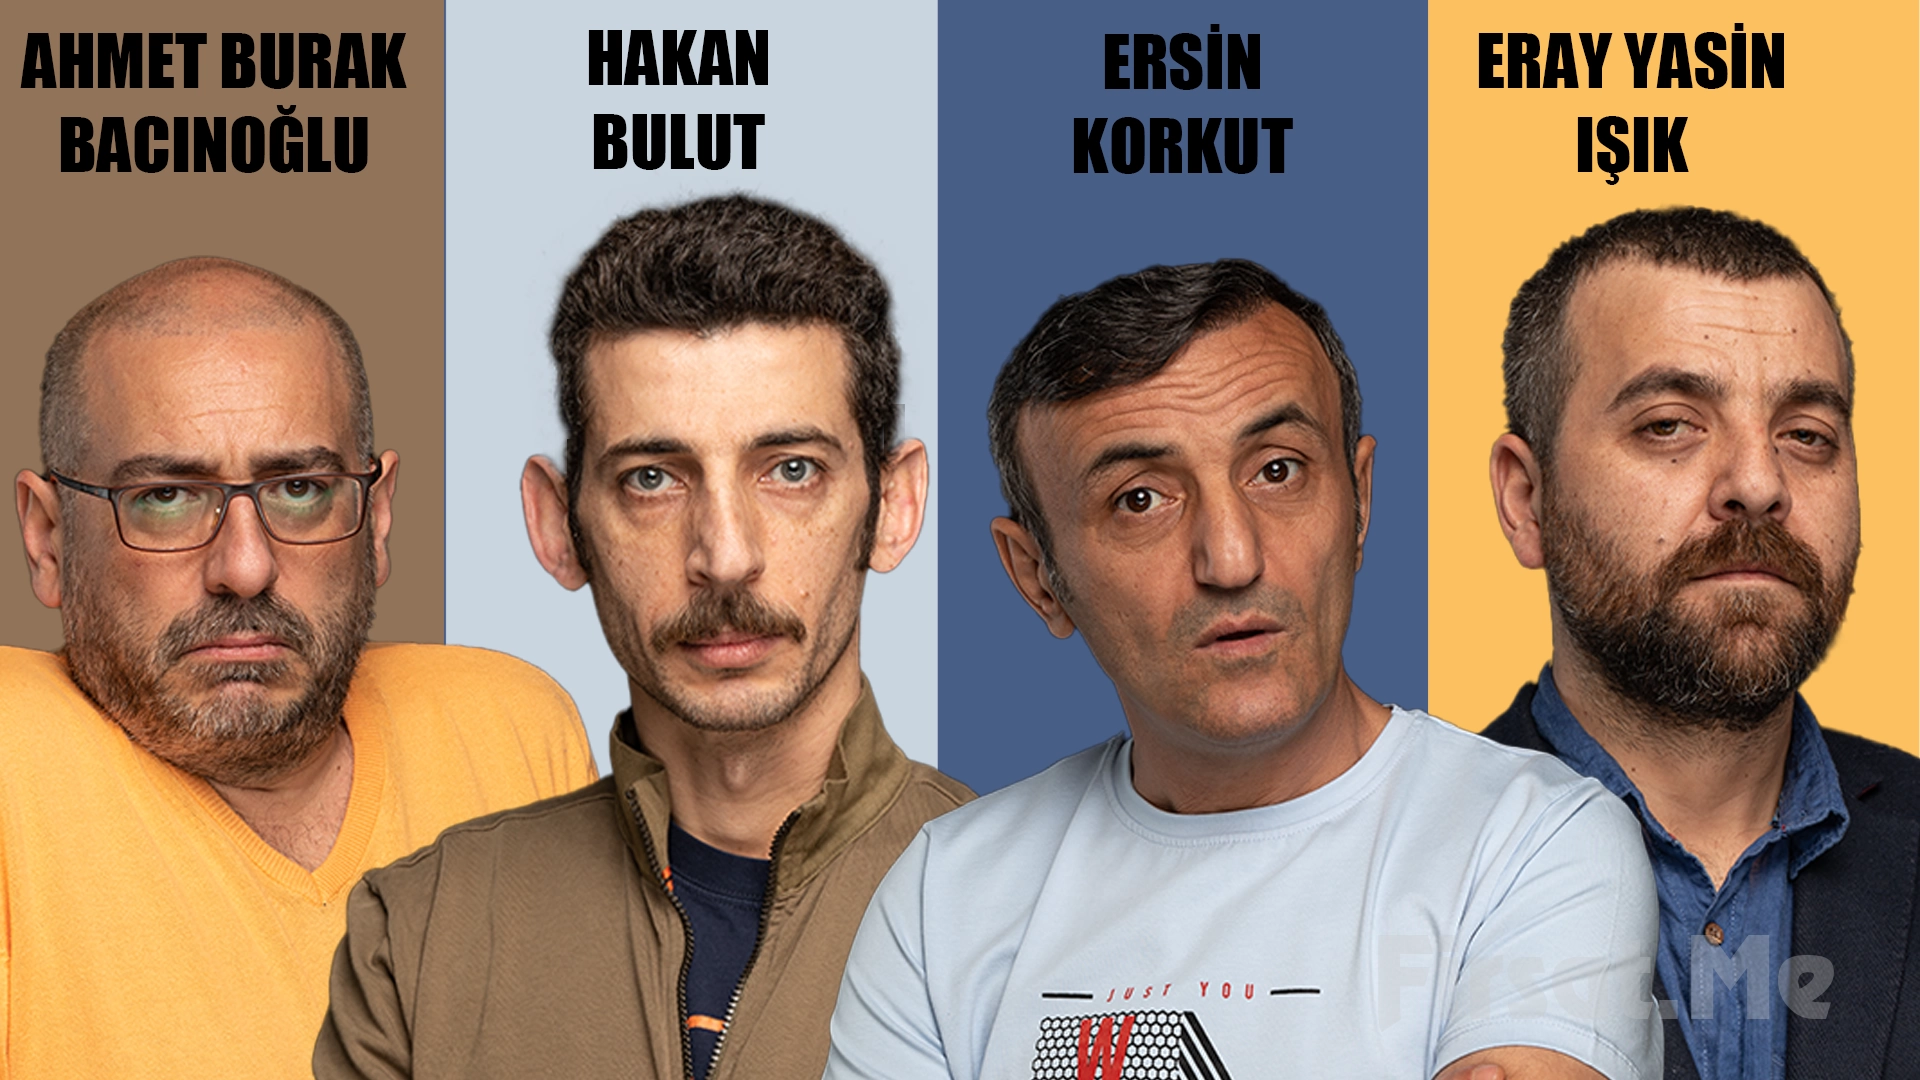 Ersin Korkut, Hakan Bulut, Ahmet Burak Bacınoğlu, Eray Yasin Işık, 'İyi Kötü Çirkin' Tiyatro Bileti